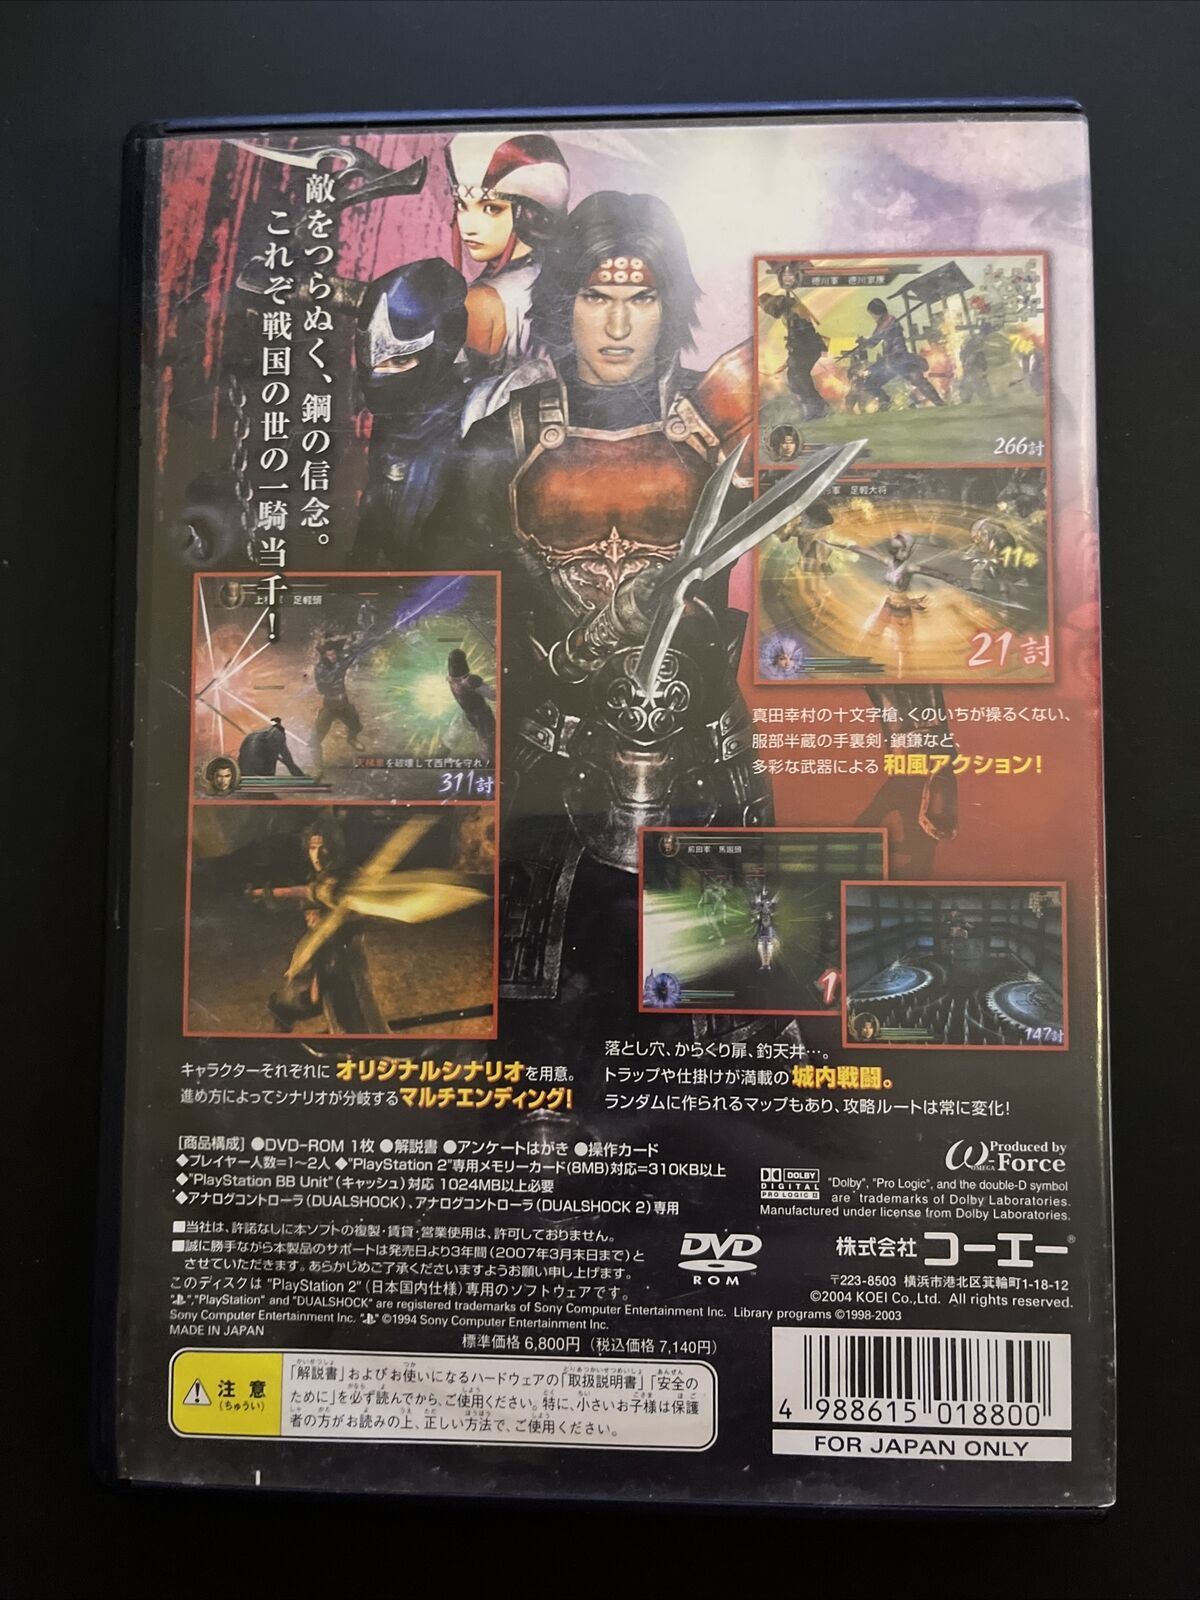 Sengoku Musou / Samurai Warriors 1 & 2 PlayStation PS2 NTSC-J Japan Game